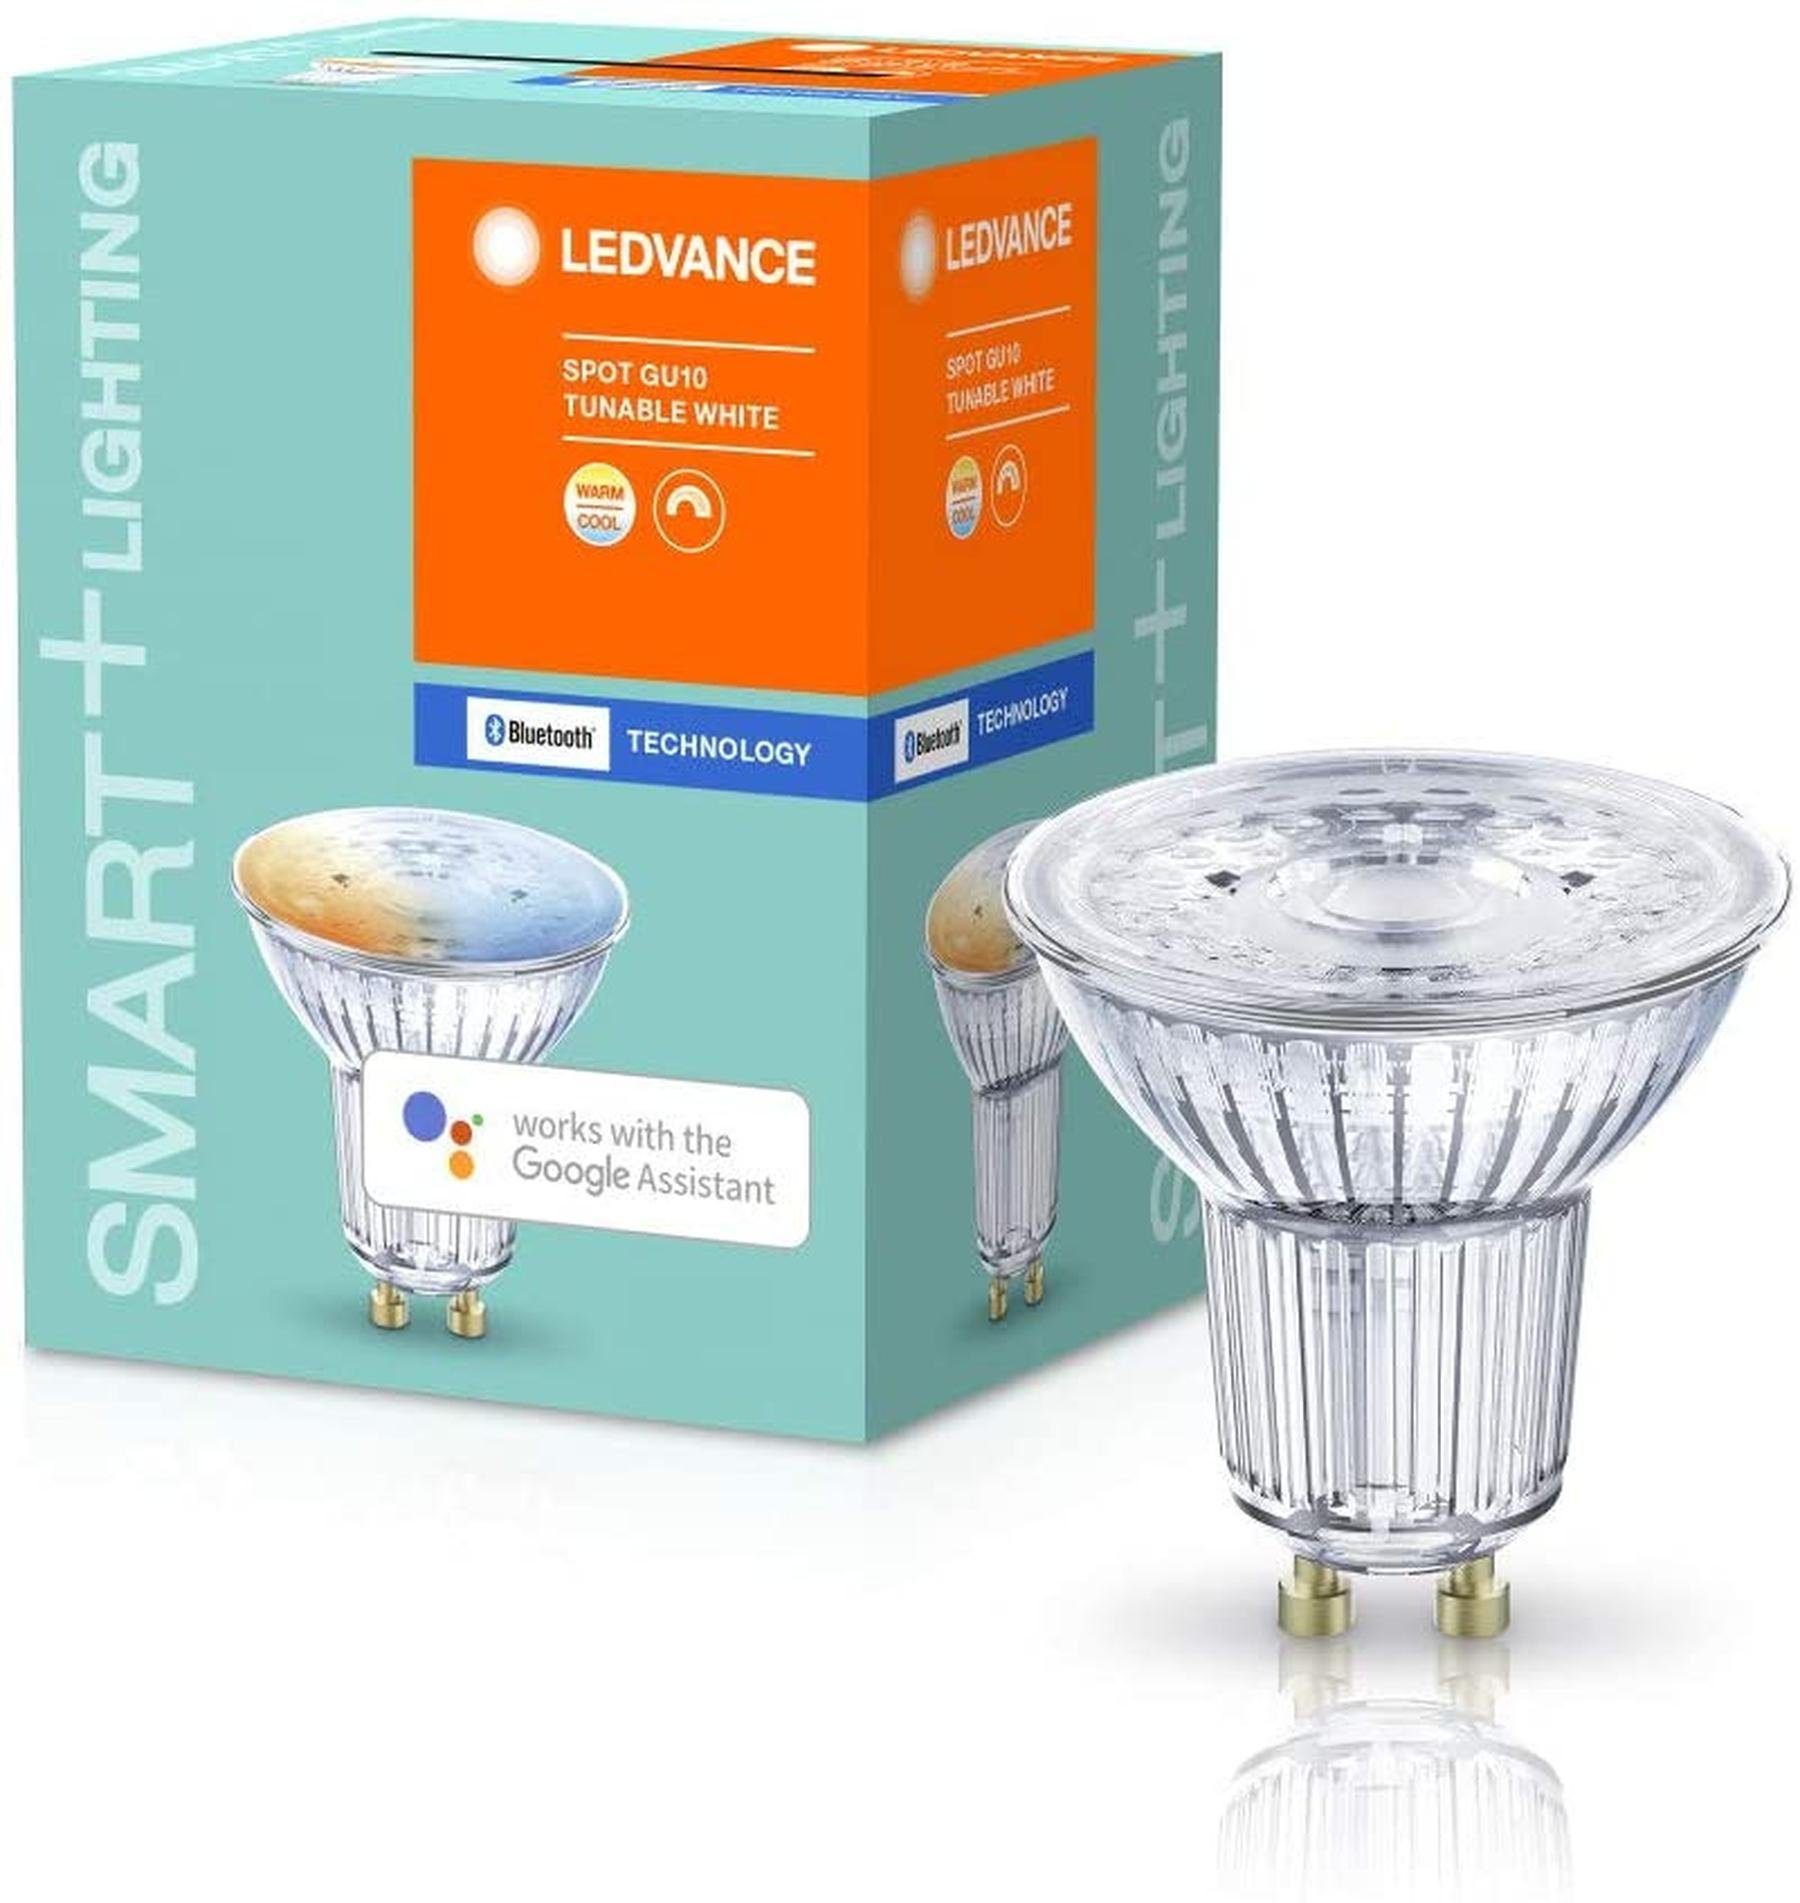 Ledvance Smarte LED-Leuchte SMARTEplus LED Reflektorlampe 45° Abstrahlwinkel mit Bluetooth Mesh Technologie GU10 LED Spot Strahler, LED fest integriert, Warmweiß bis Kaltweiß, 2.700-6.500 K, Drahtlose Steuerung über App, Einfache Installation und Nutzung, Enthält kein Quecksilber